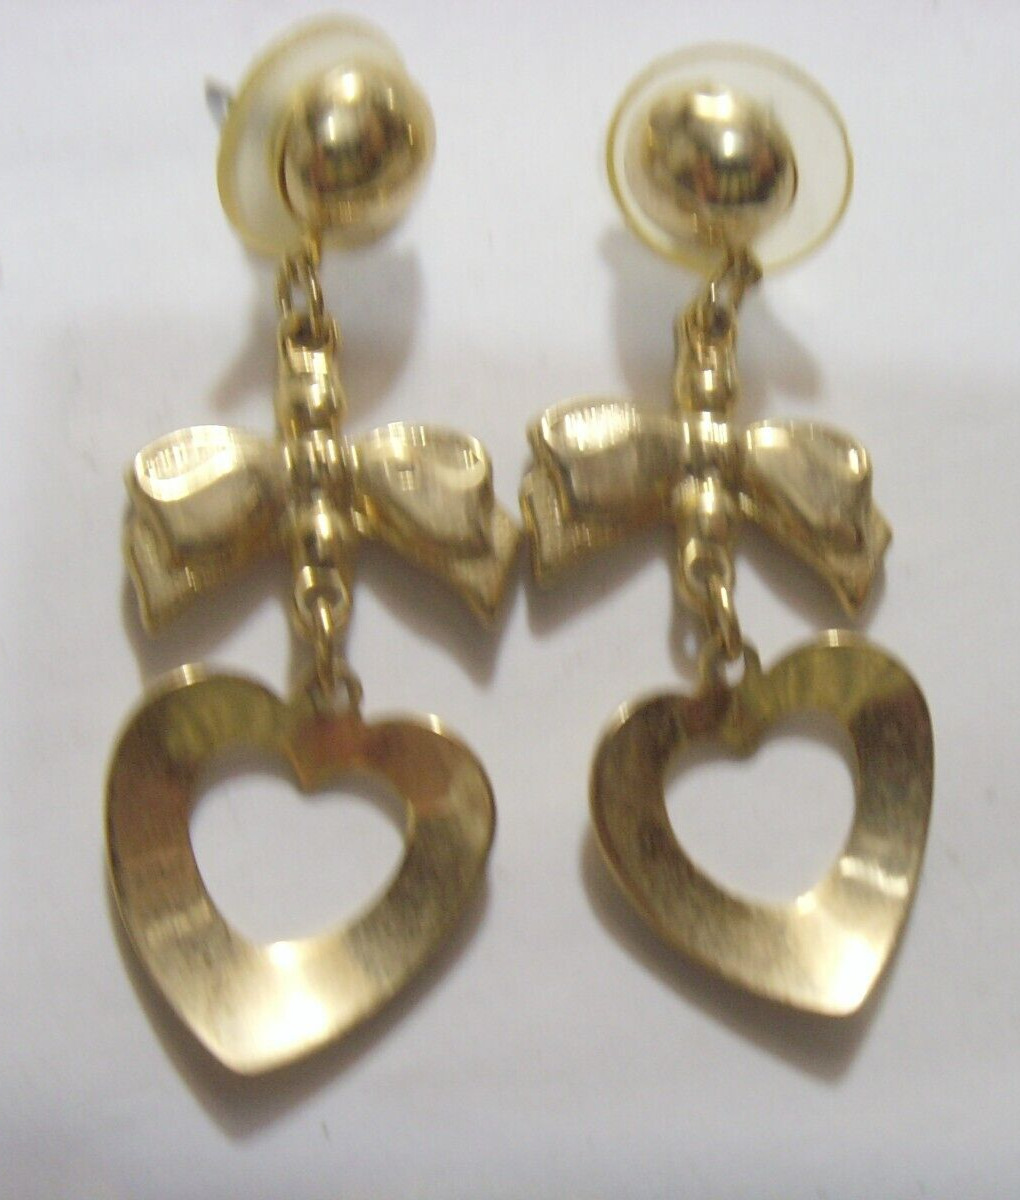 1950s vintage gold tone metal heart love motif earrings jewelry 52477